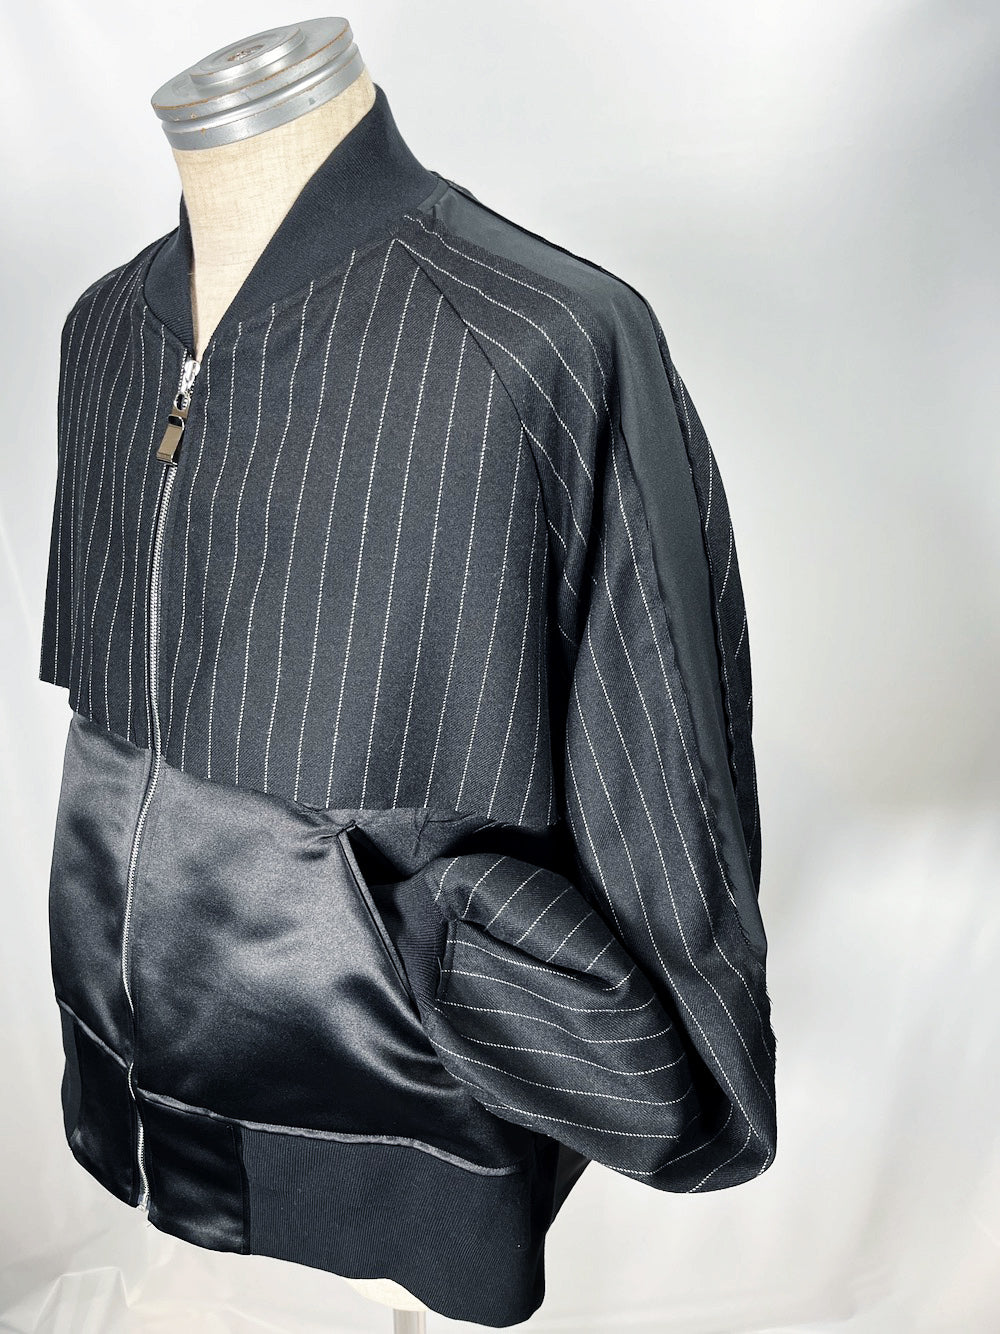 LB23AW-BL01-GST | Striped wool serge souvenir jacket | BLACK STRIPE 